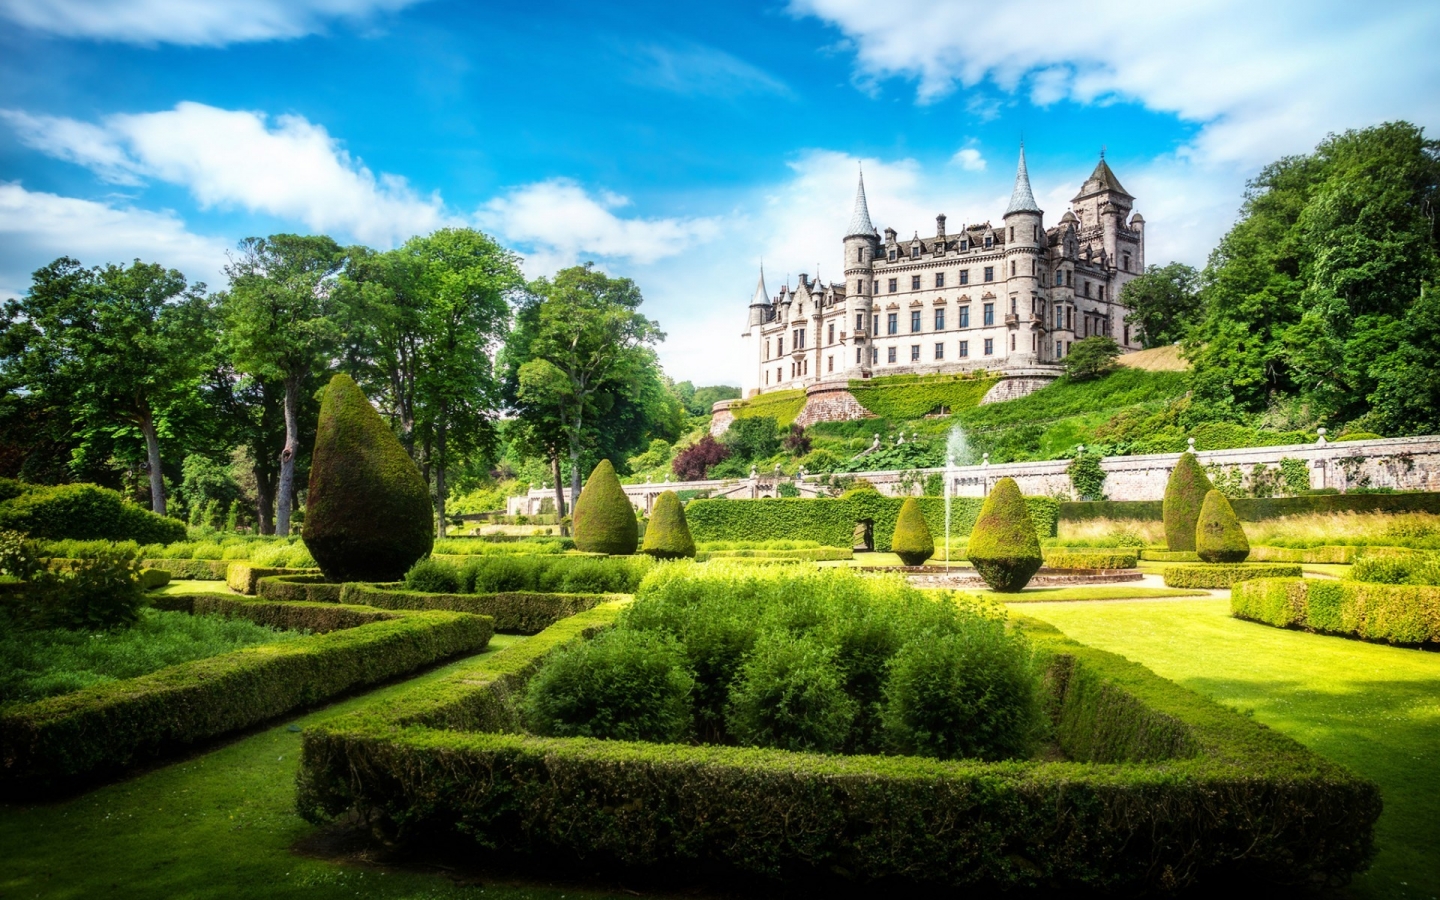 Dunrobin Castle Garden for 1440 x 900 widescreen resolution